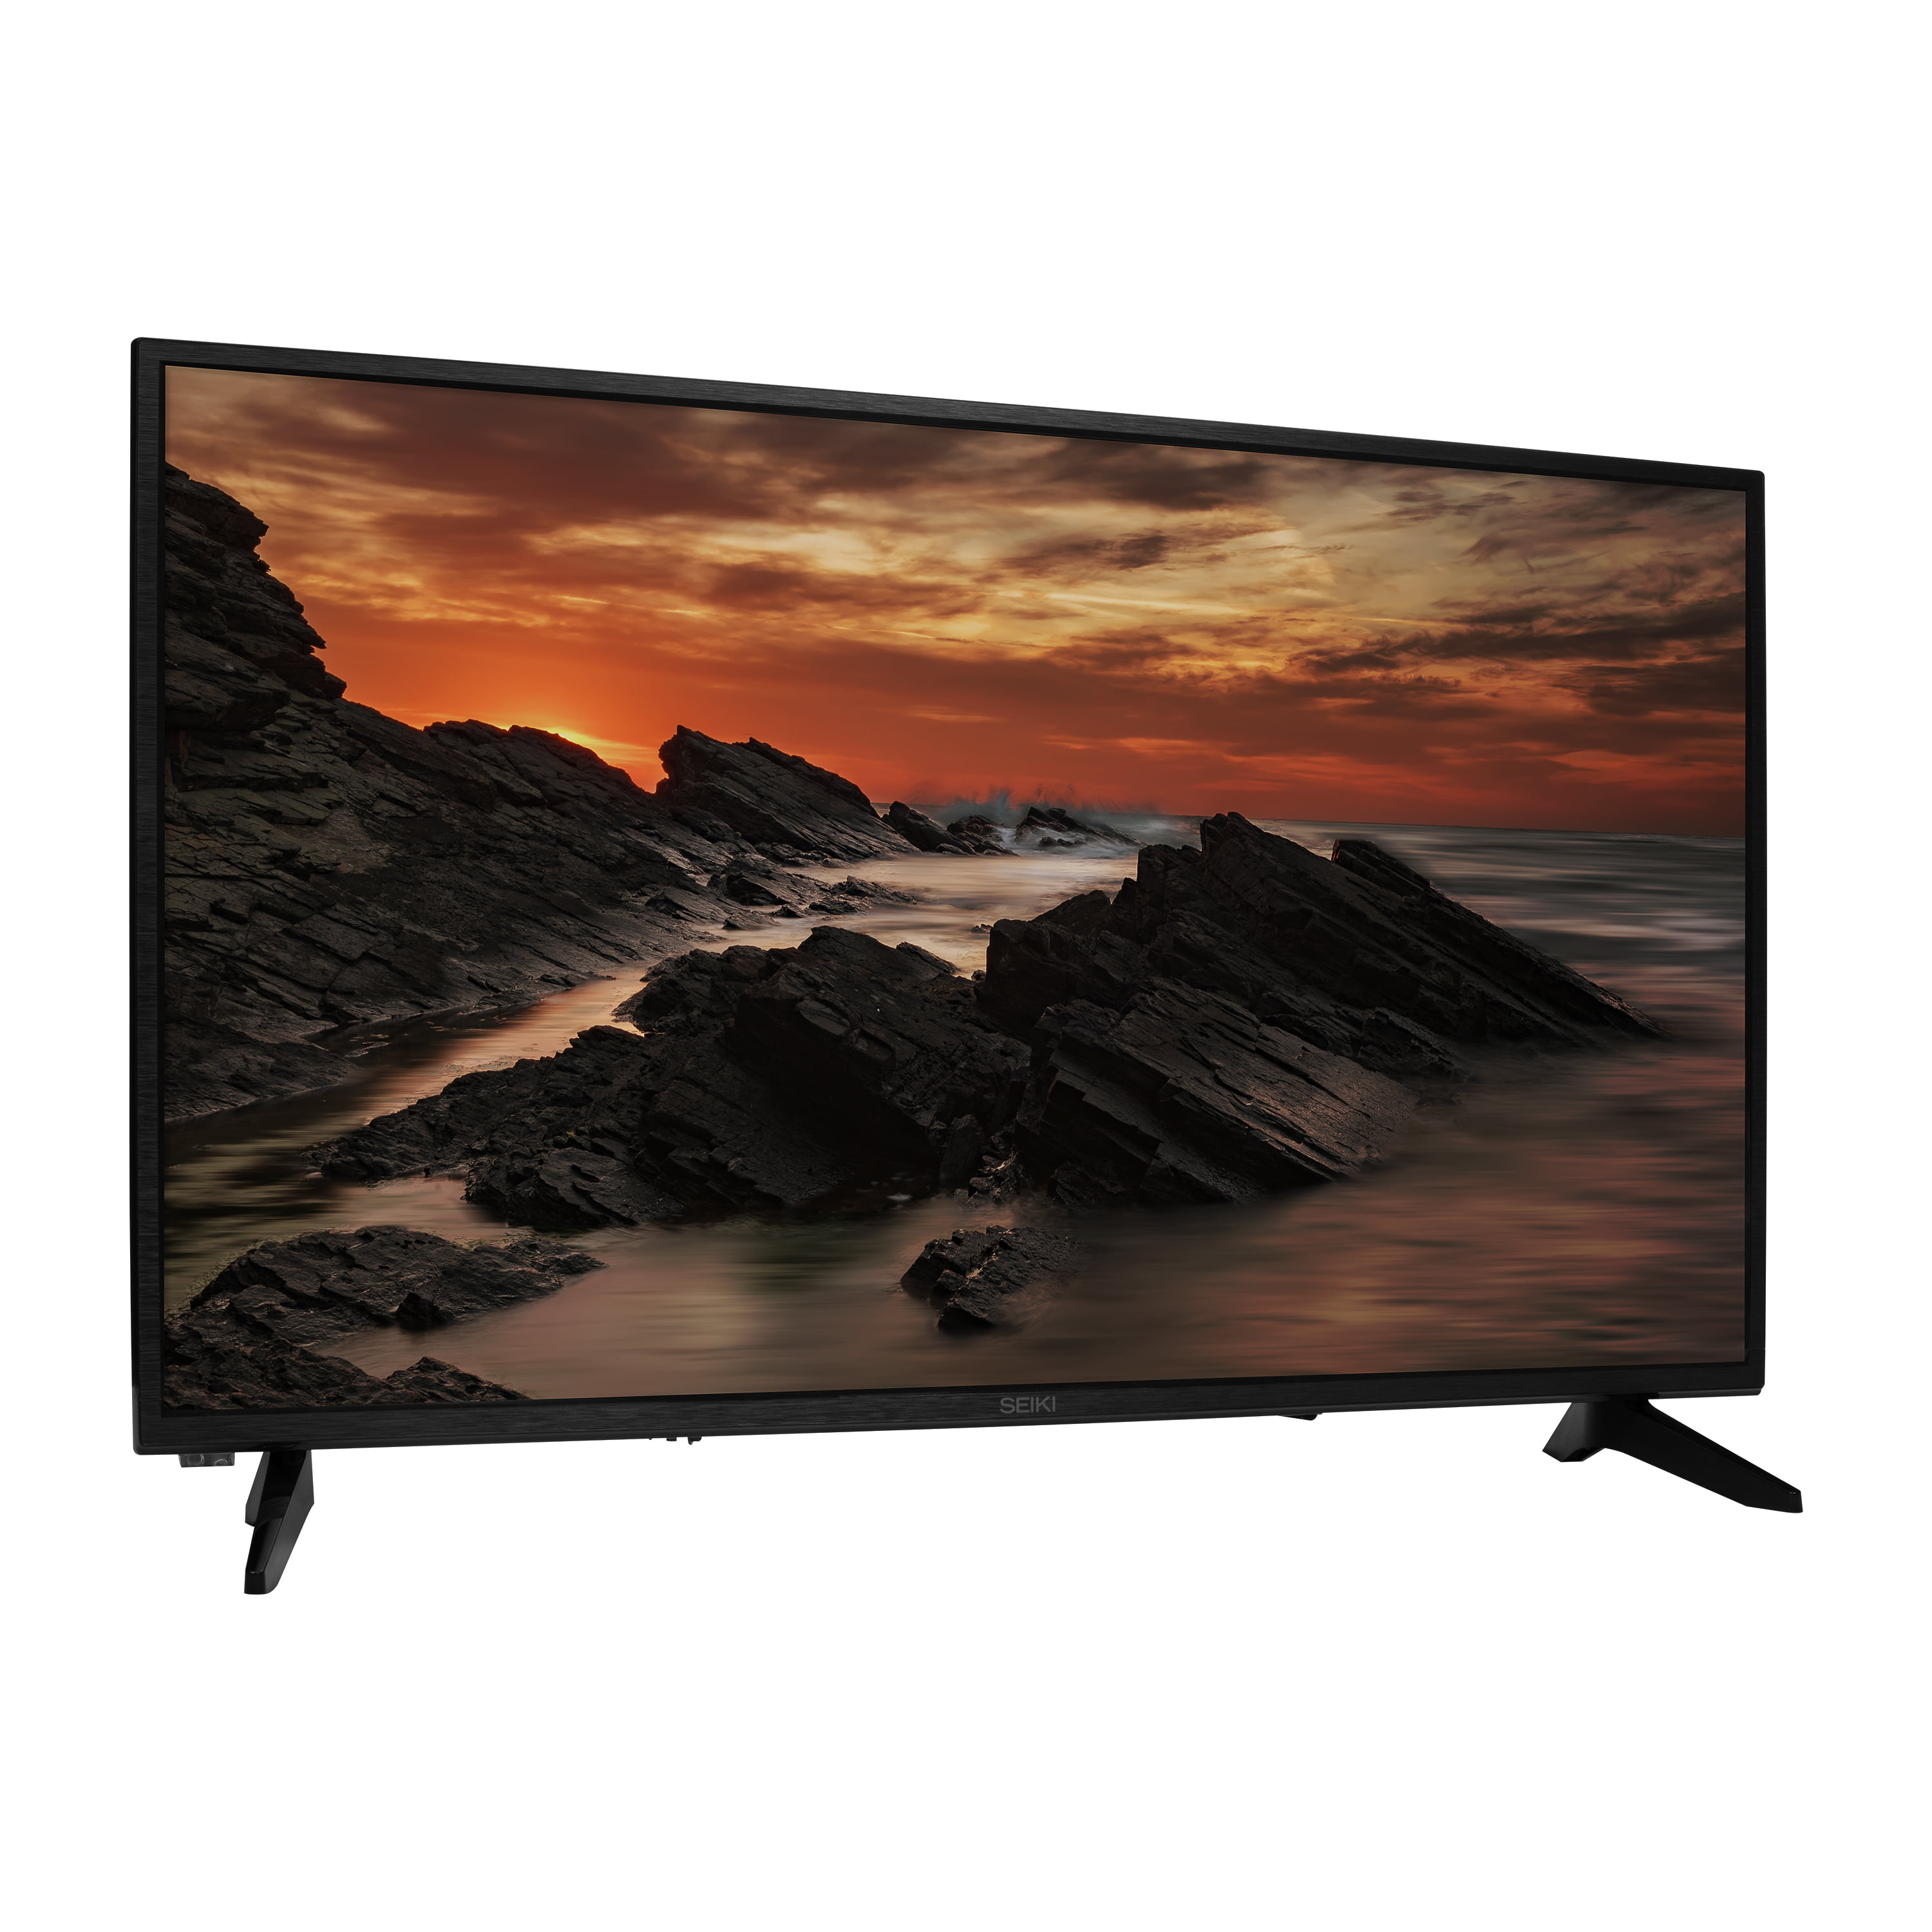 Cass HD (720p) LED TV - Walmart.com